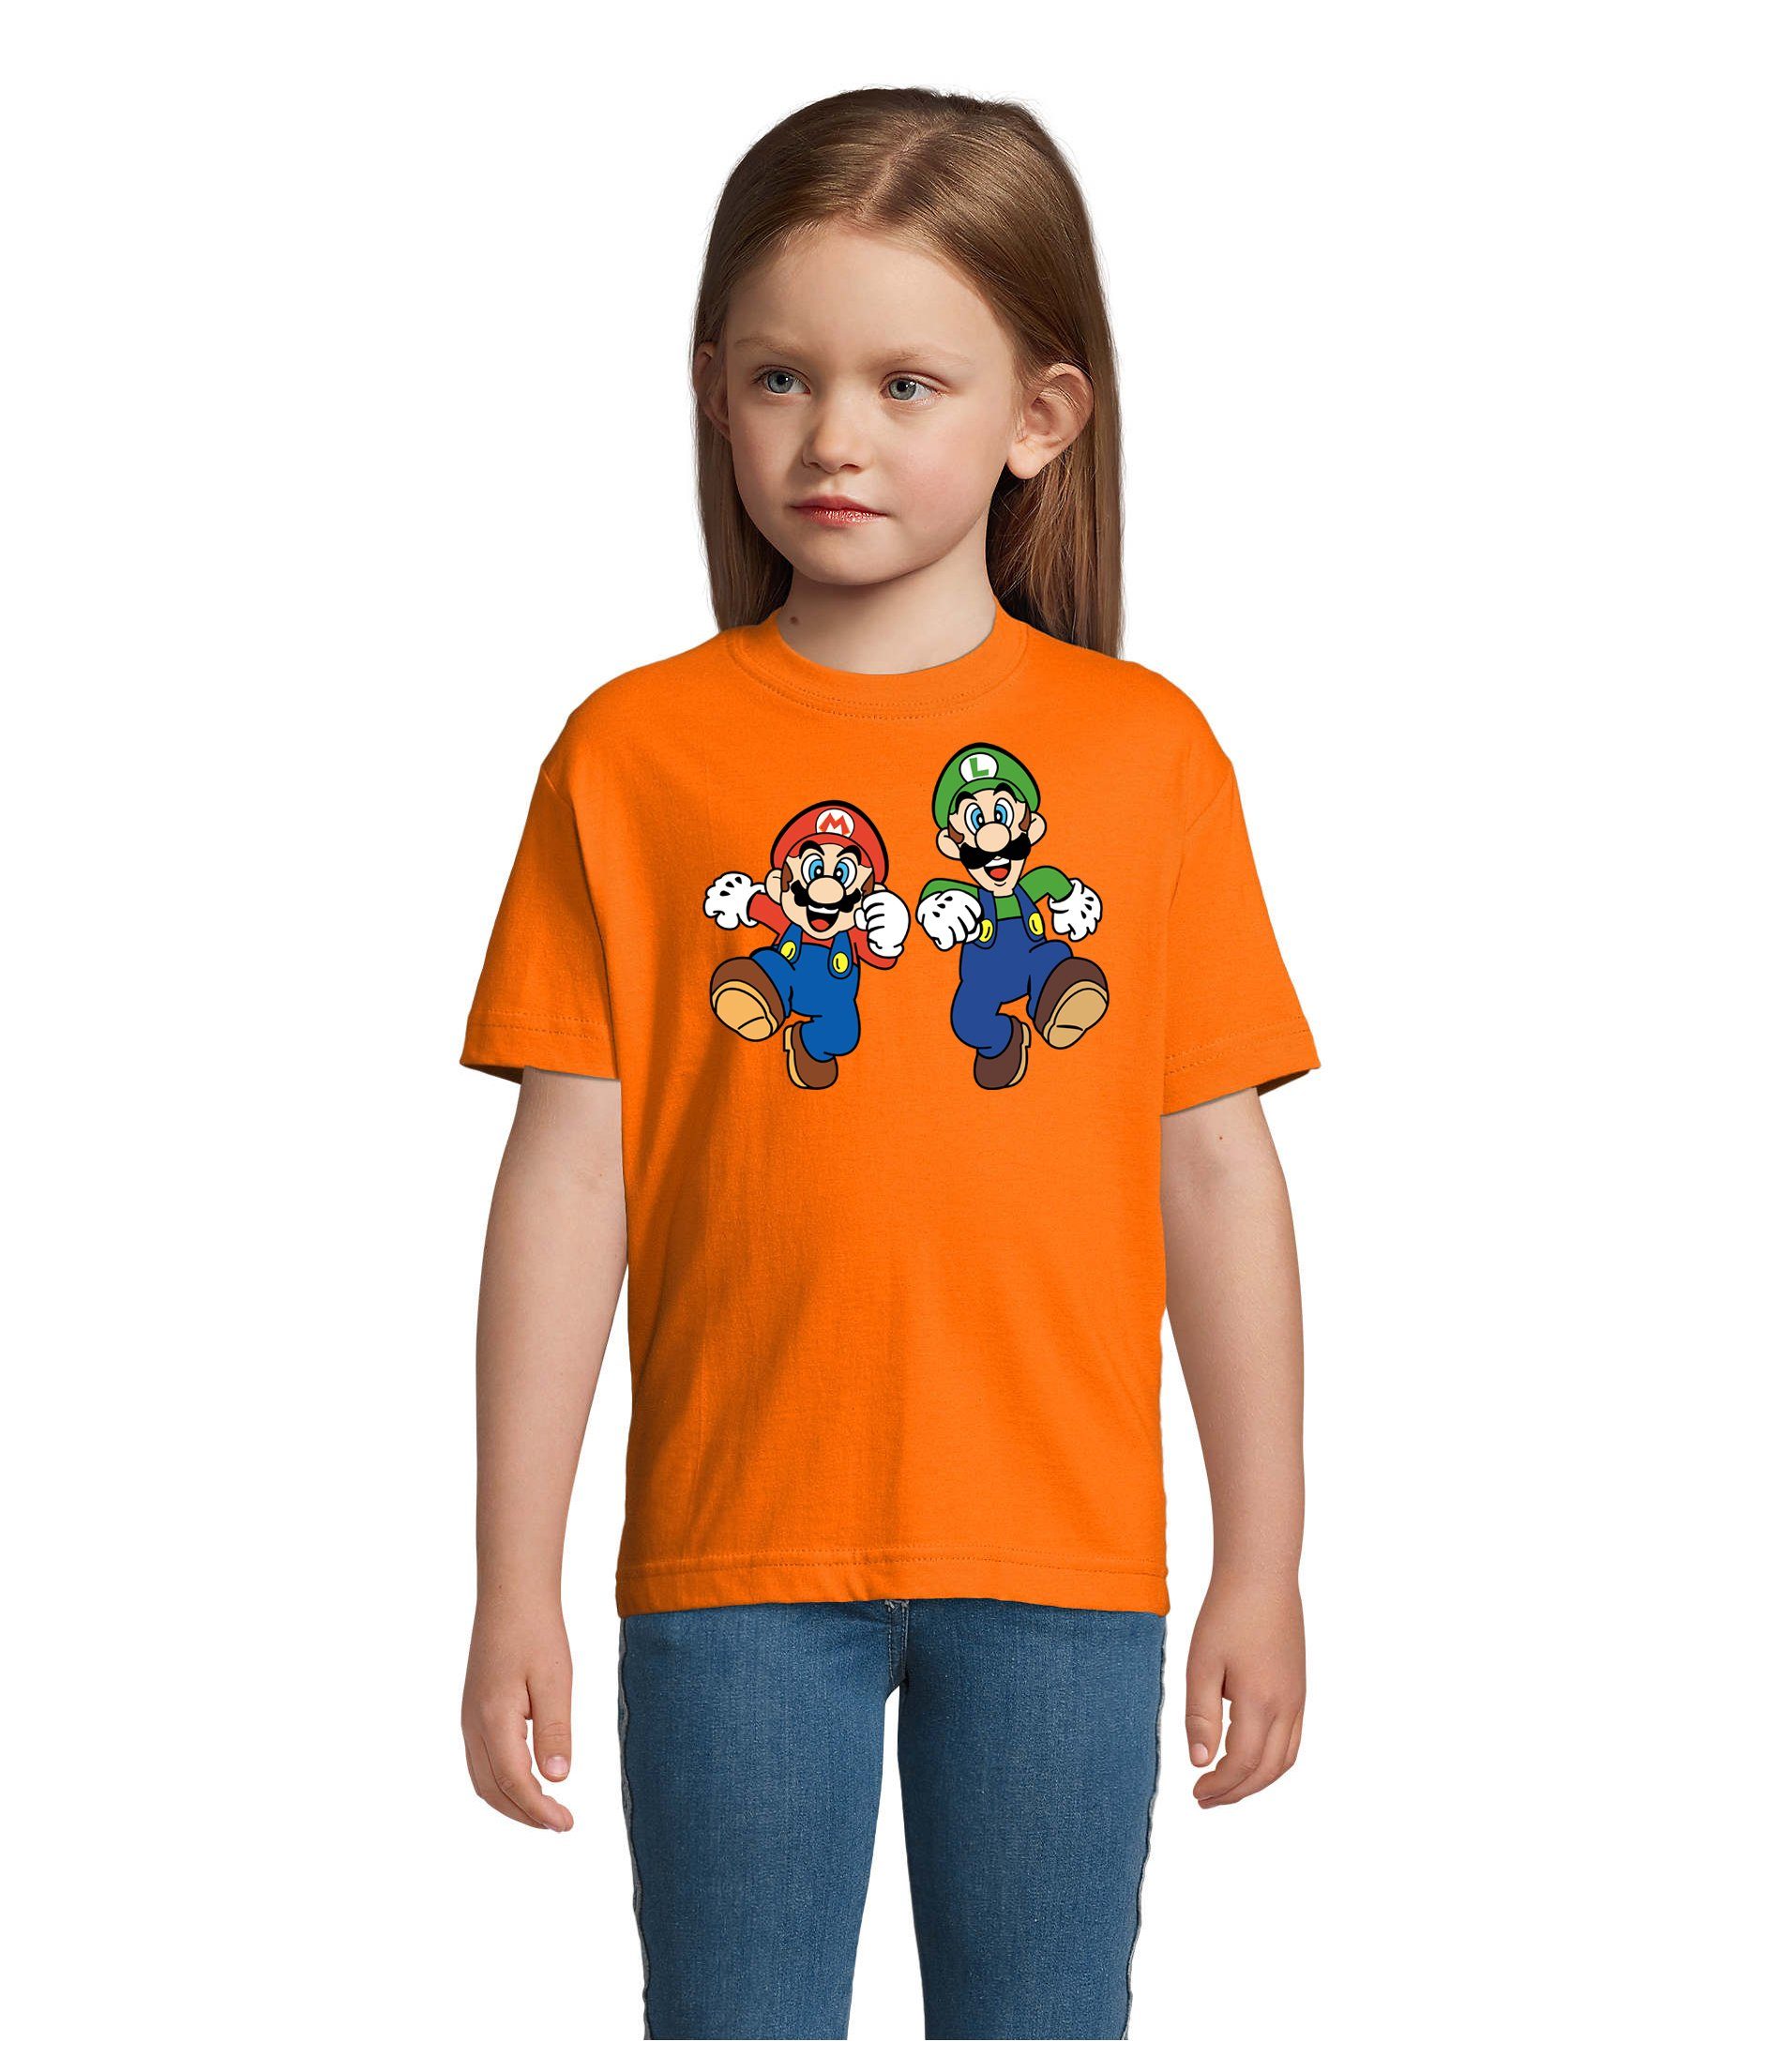 Blondie & Brownie T-Shirt Kinder Mario & Luigi Bowser Nintendo Yoshi Game Gamer Konsole Orange